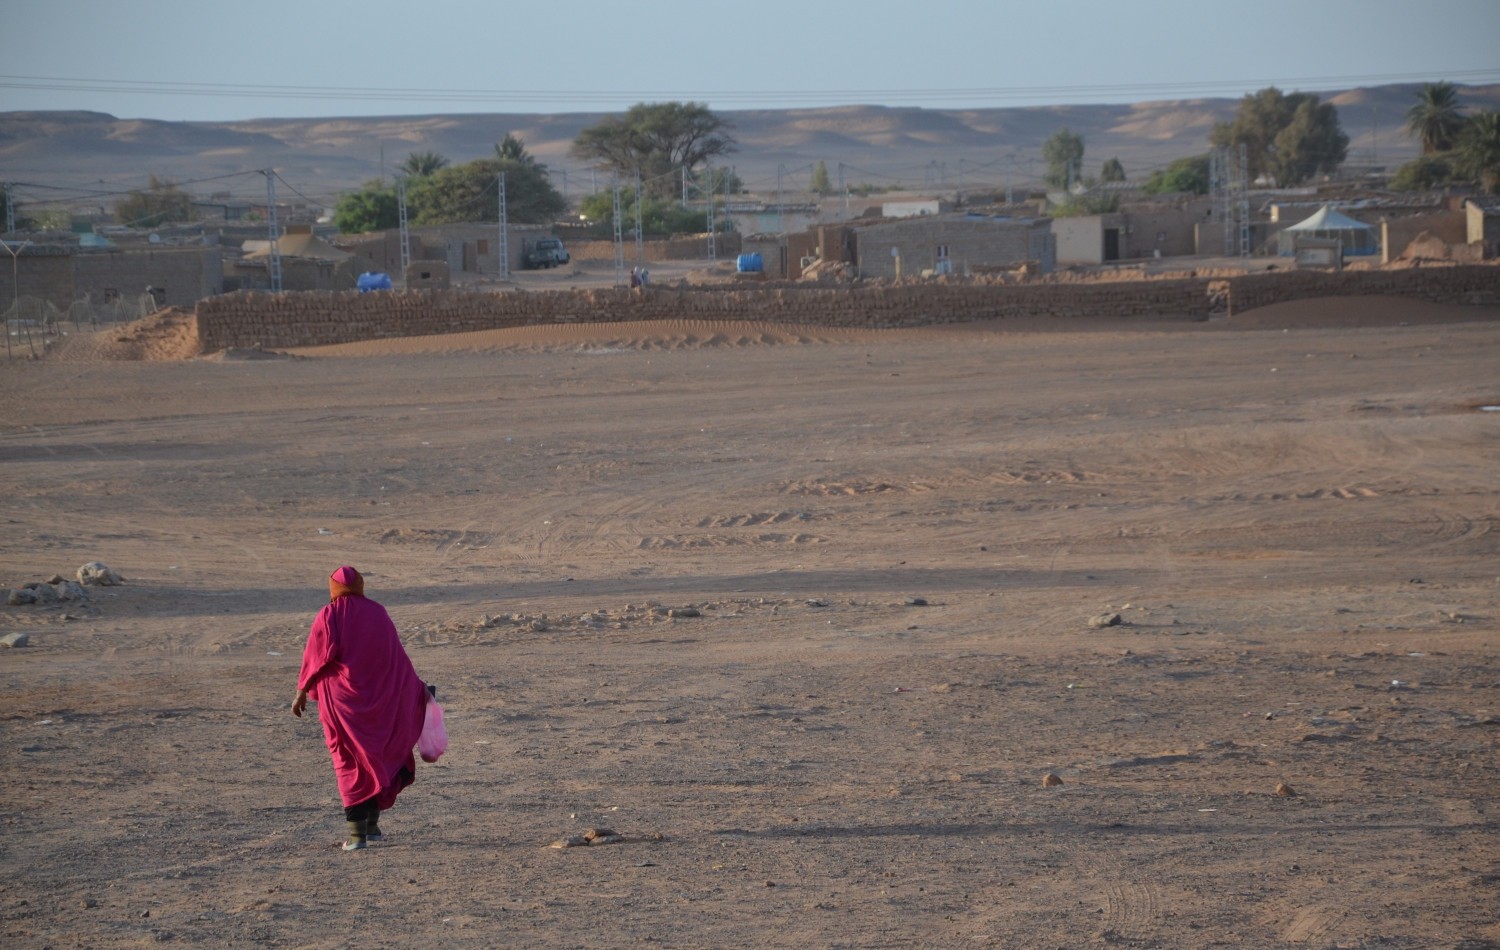 Urgence malnutrition dans les camps Sahraouis , 75% de réduction des rations alimentaires